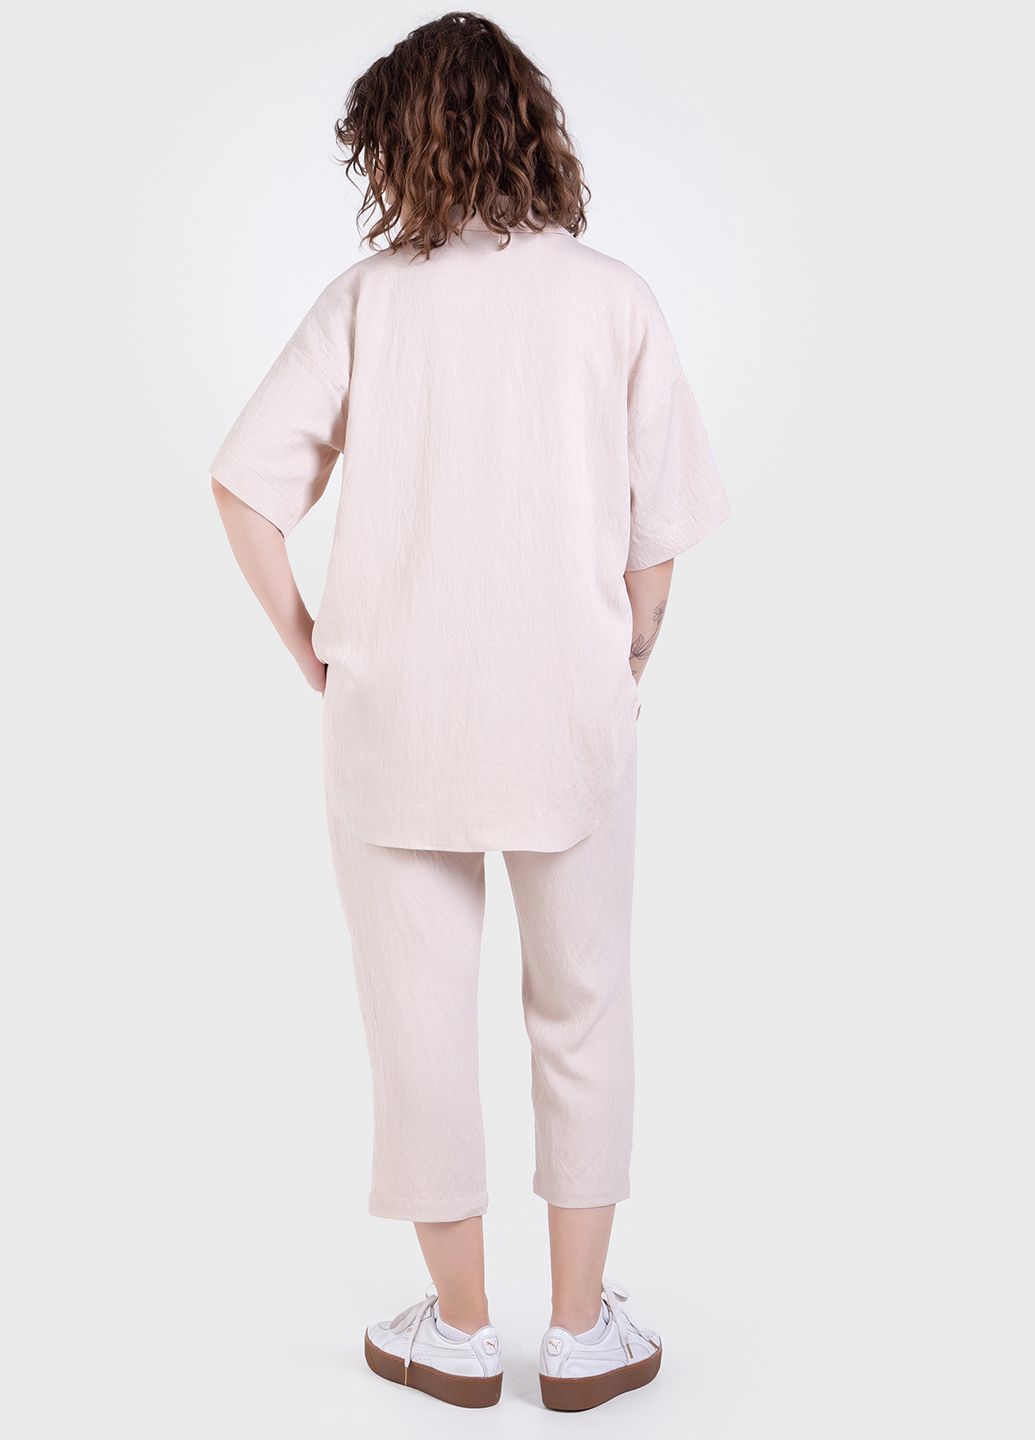 Купить Летний костюм женский двойка бежевого цвета: брюки, рубашка Merlini Авиано 100000153, размер 42-44 в интернет-магазине